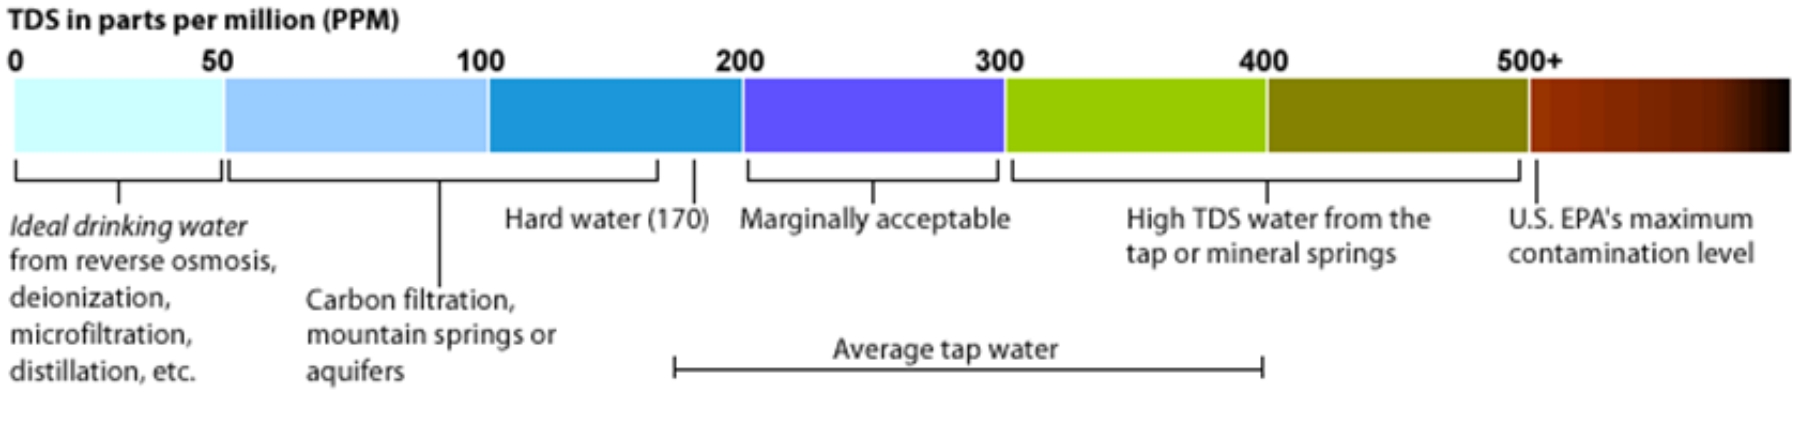 Bandbreite der Wasserqualität in PPM